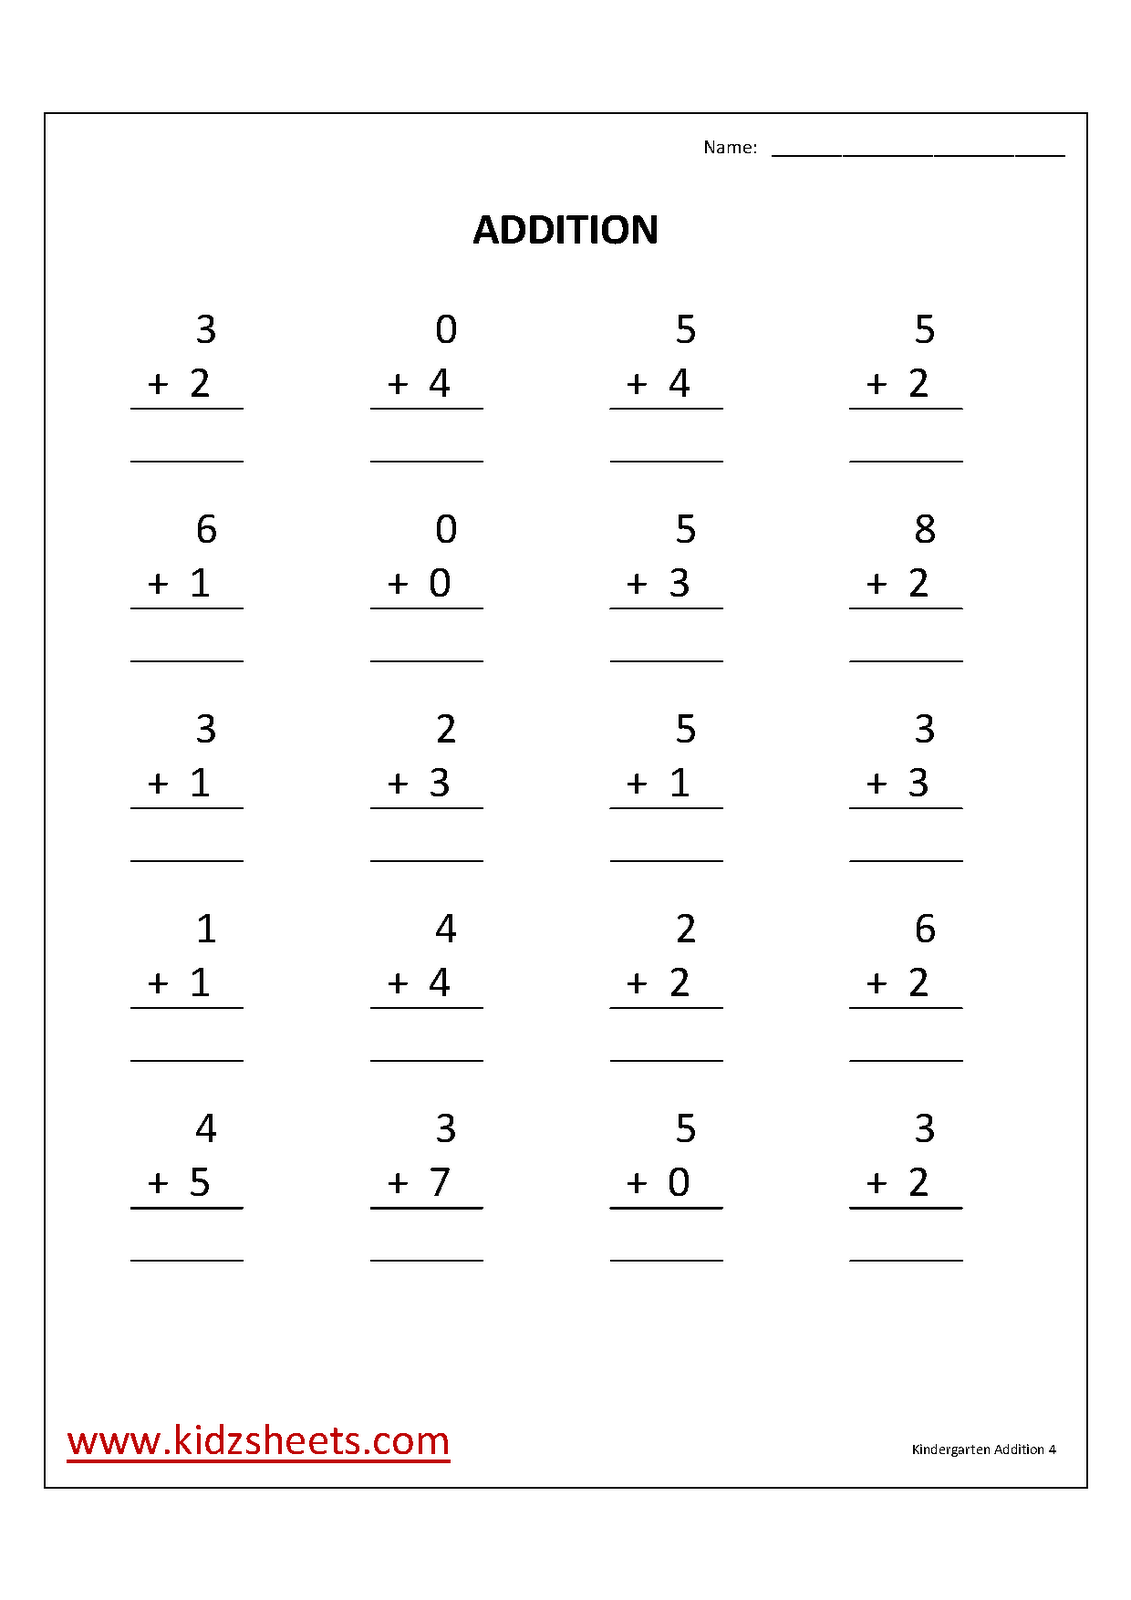 kidz-worksheets-kindergarten-addition-worksheet4